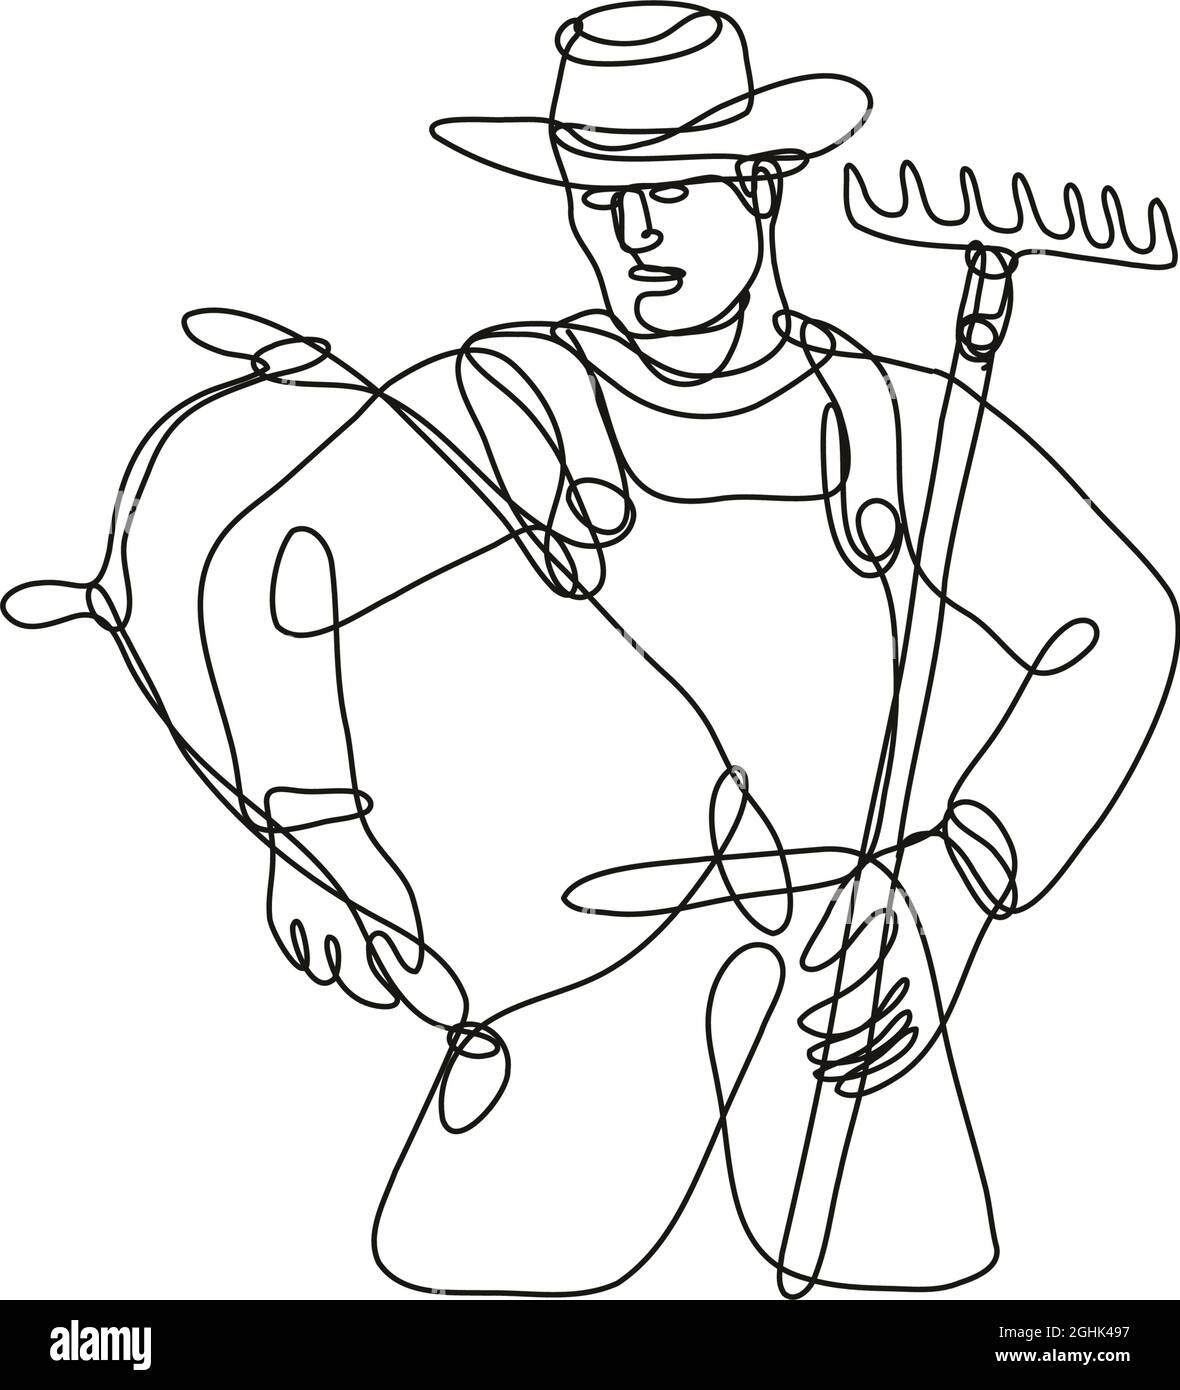 Dessin de ligne continue illustration d'un fermier biologique avec râteau et sac de transport fait en ligne mono ou en forme de doodle en noir et blanc sur isolé Illustration de Vecteur